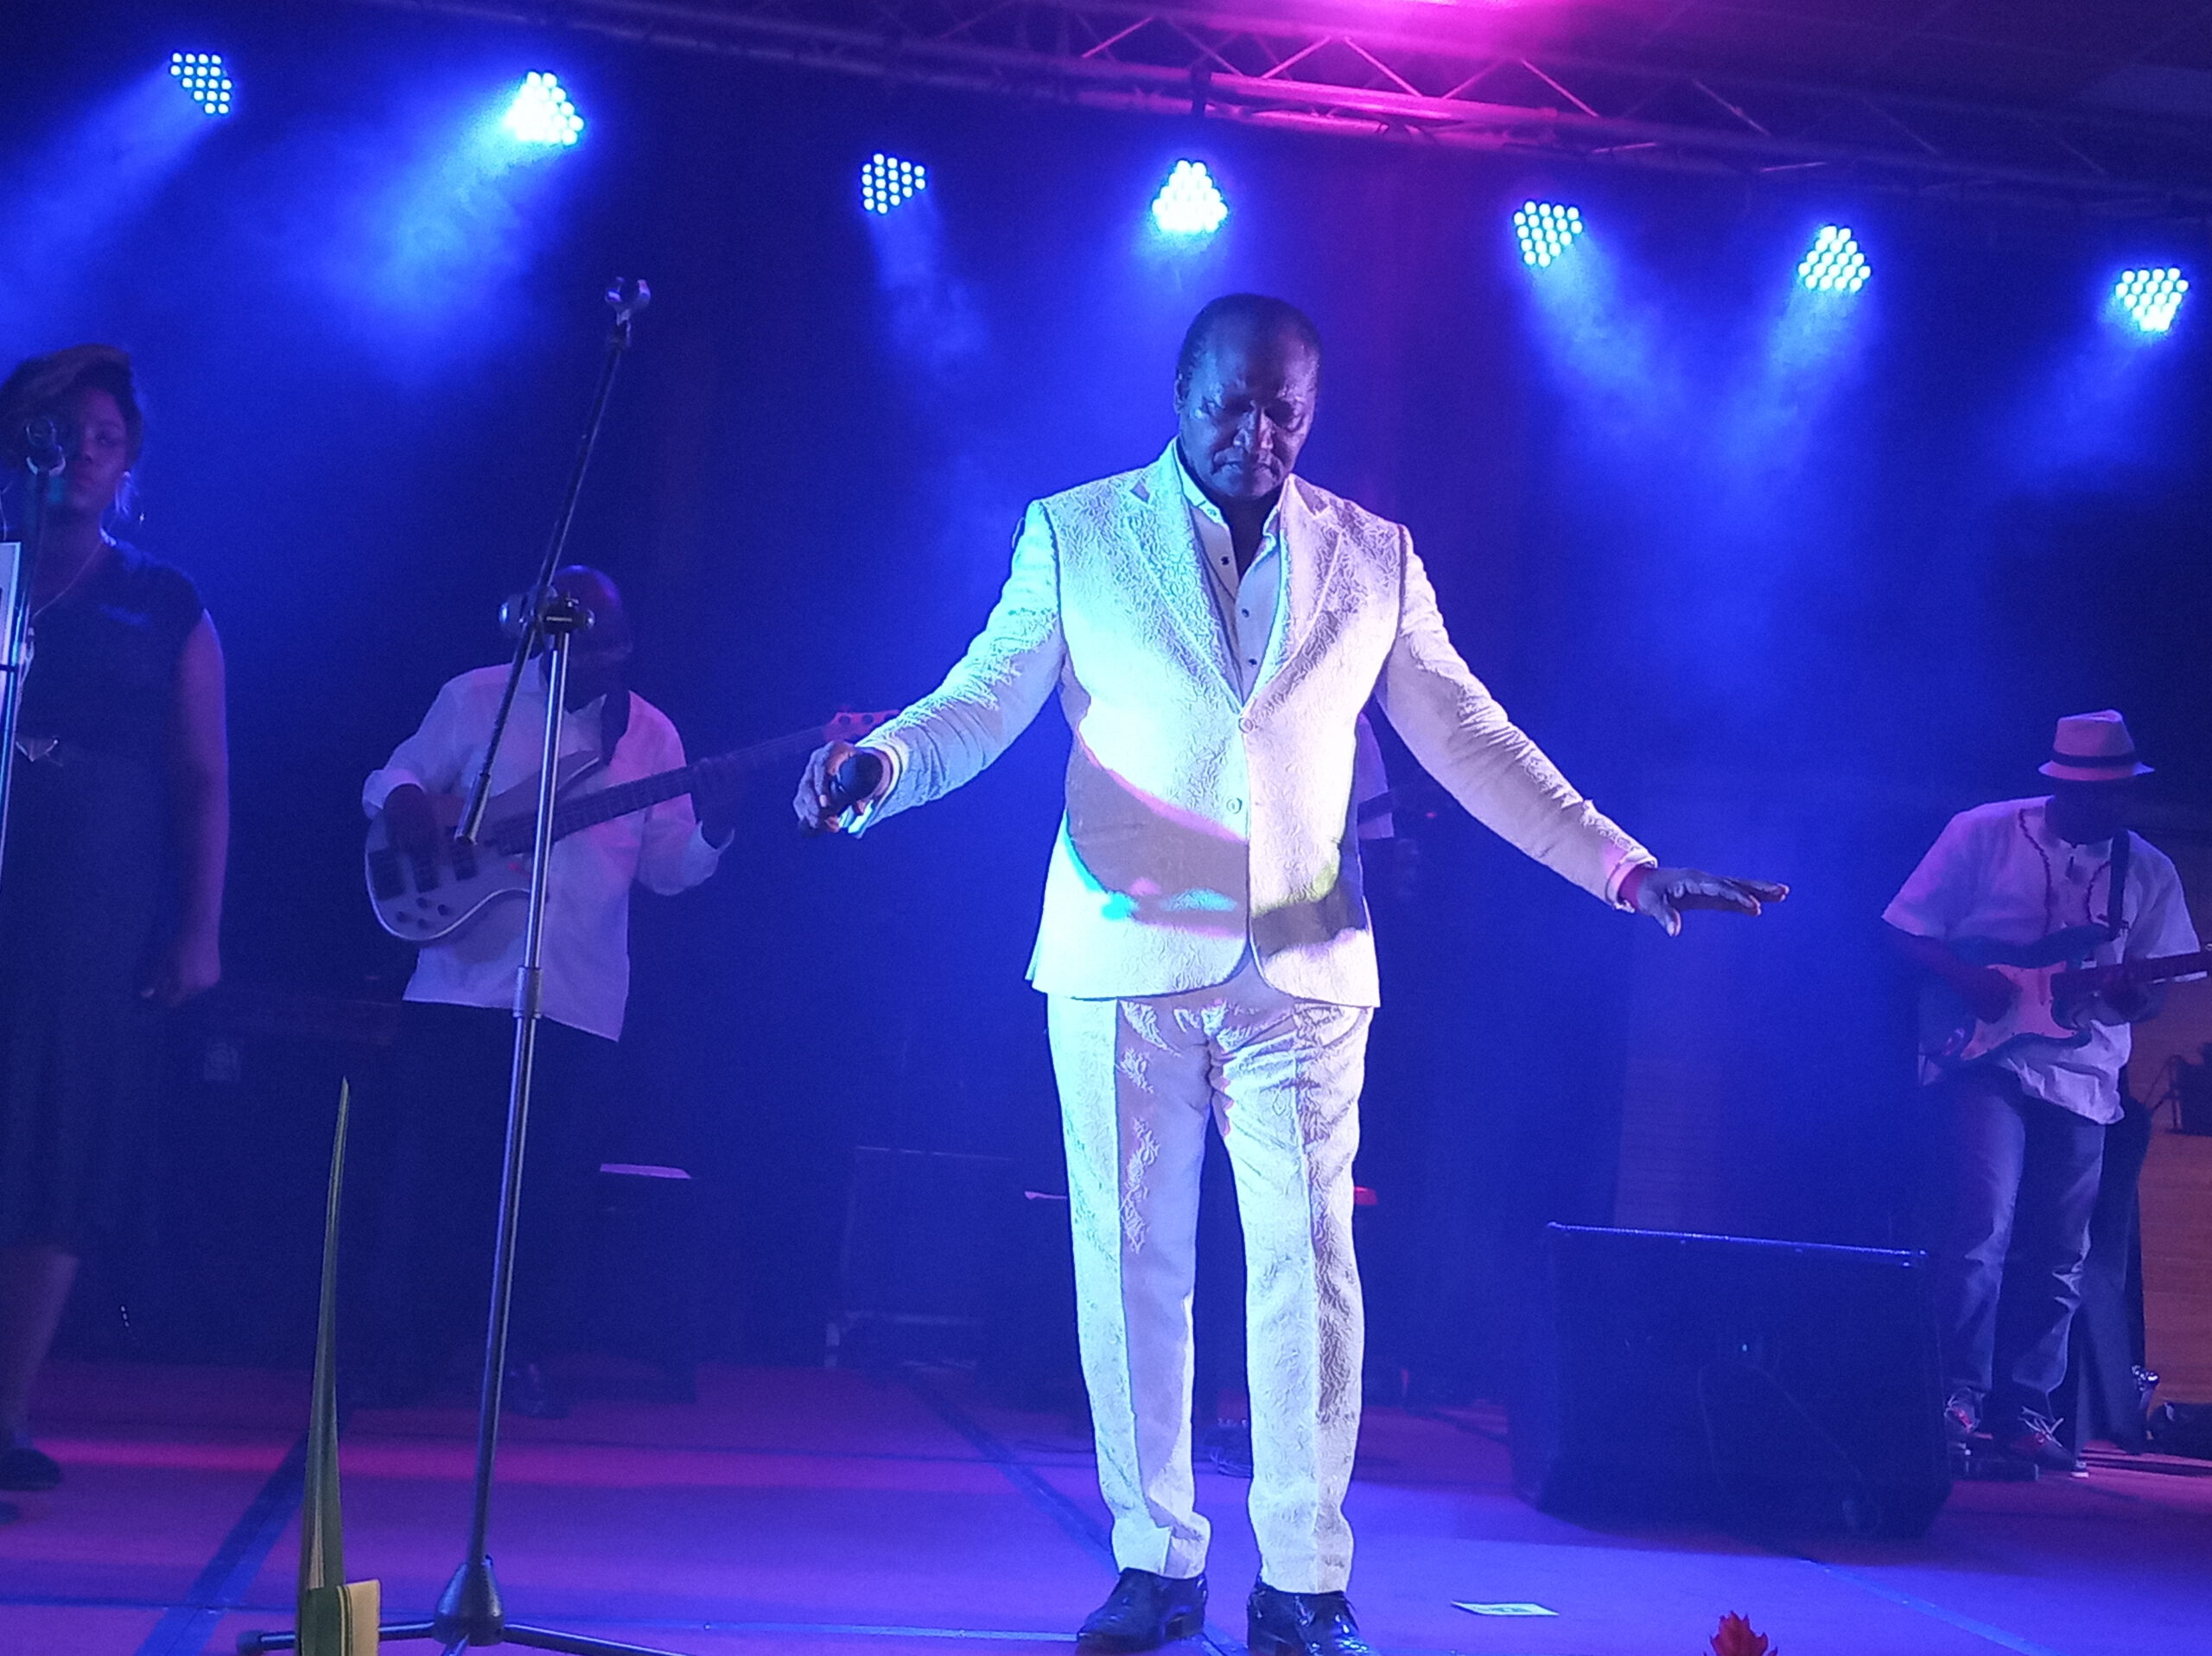 Après vingt neuf ans hors des frontières de son Cameroun natal, Elvis Kemayo, le célèbre artiste des années 90 et présentateur vedette de l’émission « télé podium » sur la Cameroon radio and television (Crtv)  a signé son comeback, avec un concert géant à Douala